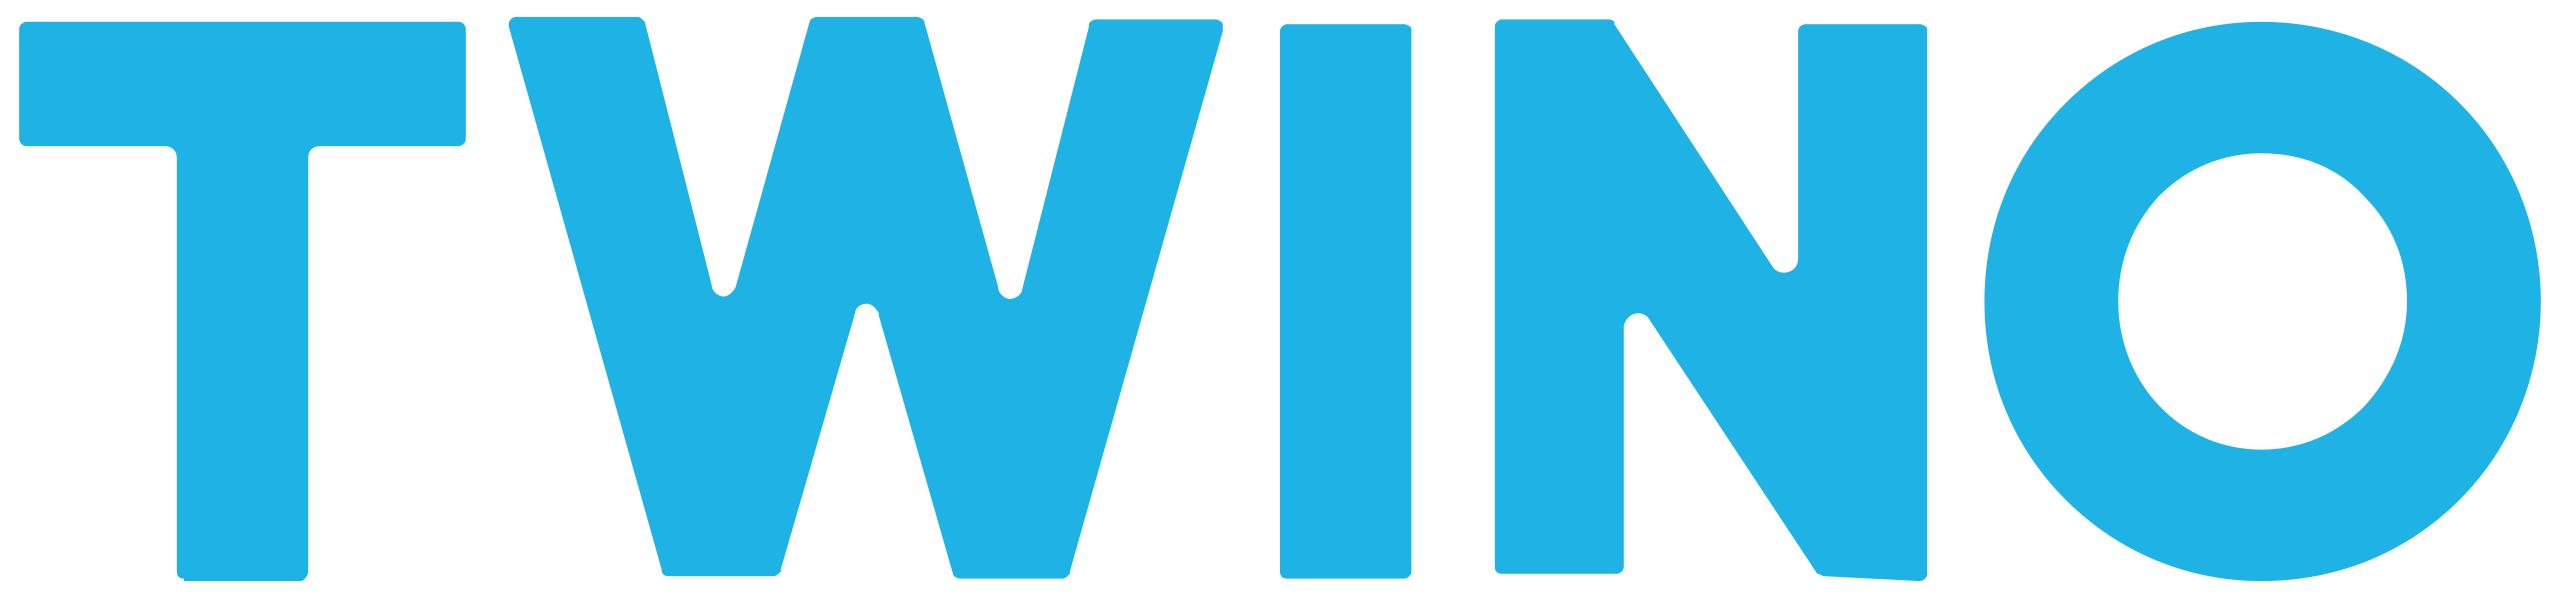 Twino logo